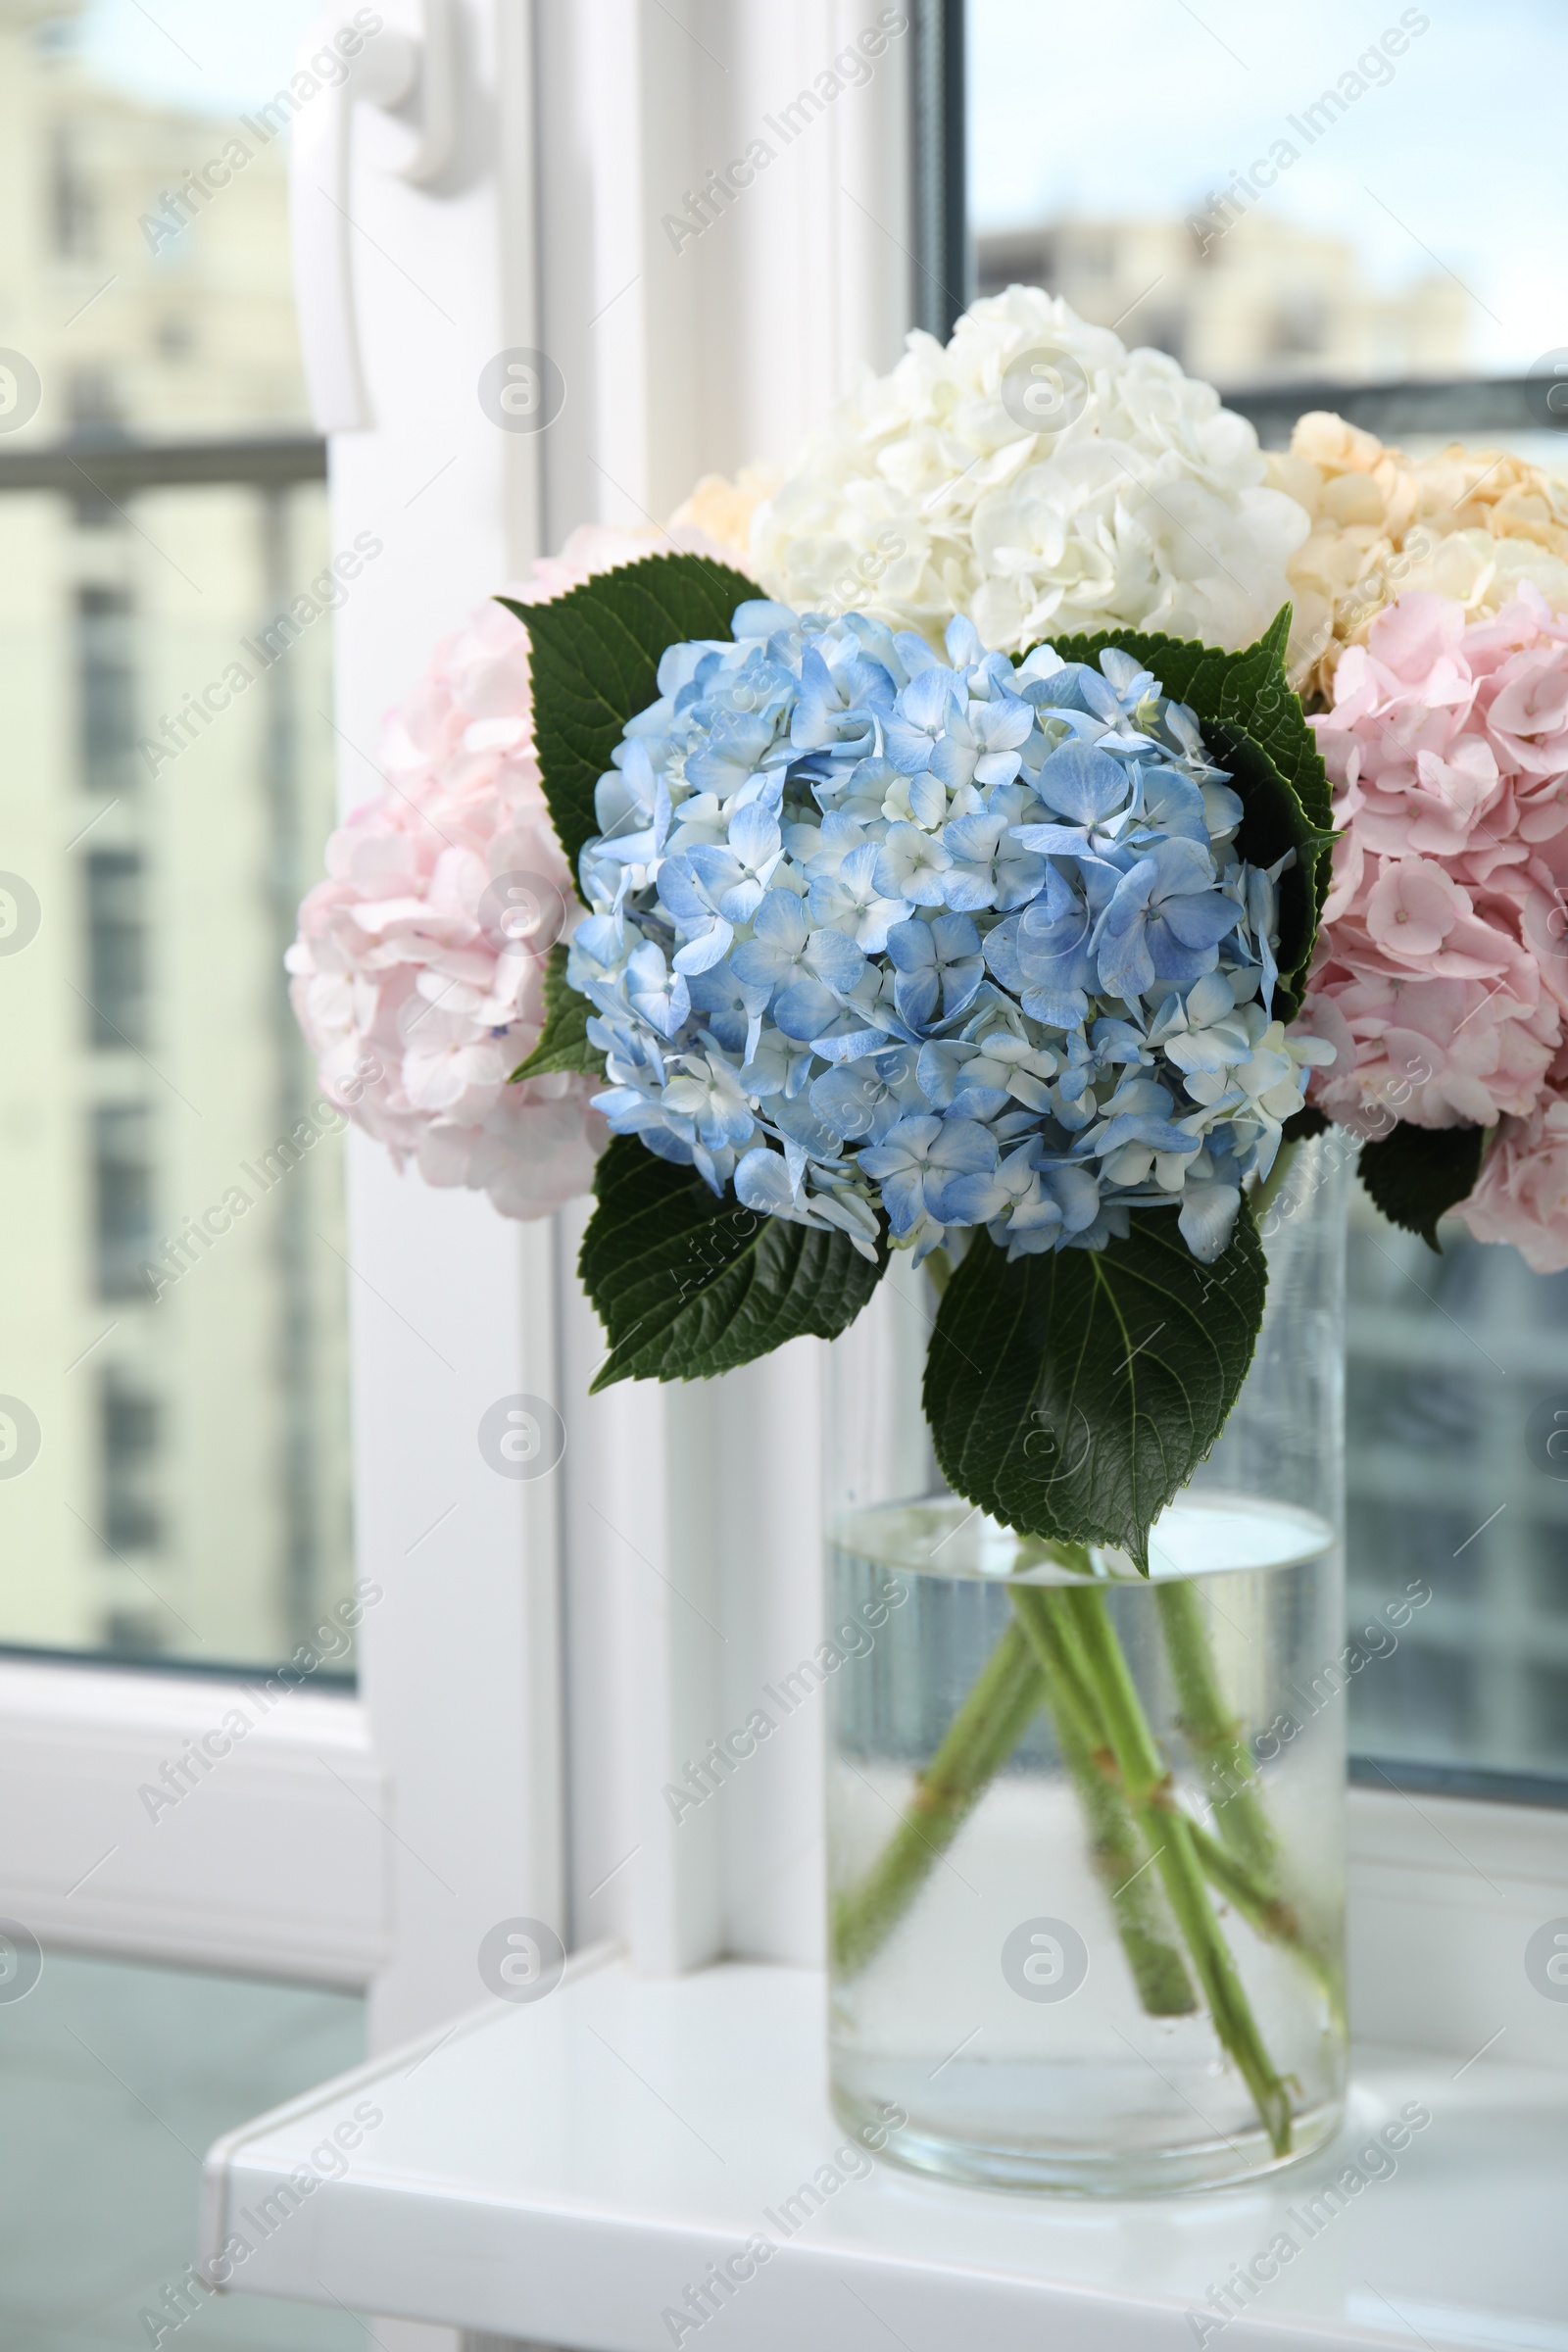 Photo of Beautiful hydrangea flowers in vase on windowsill indoors